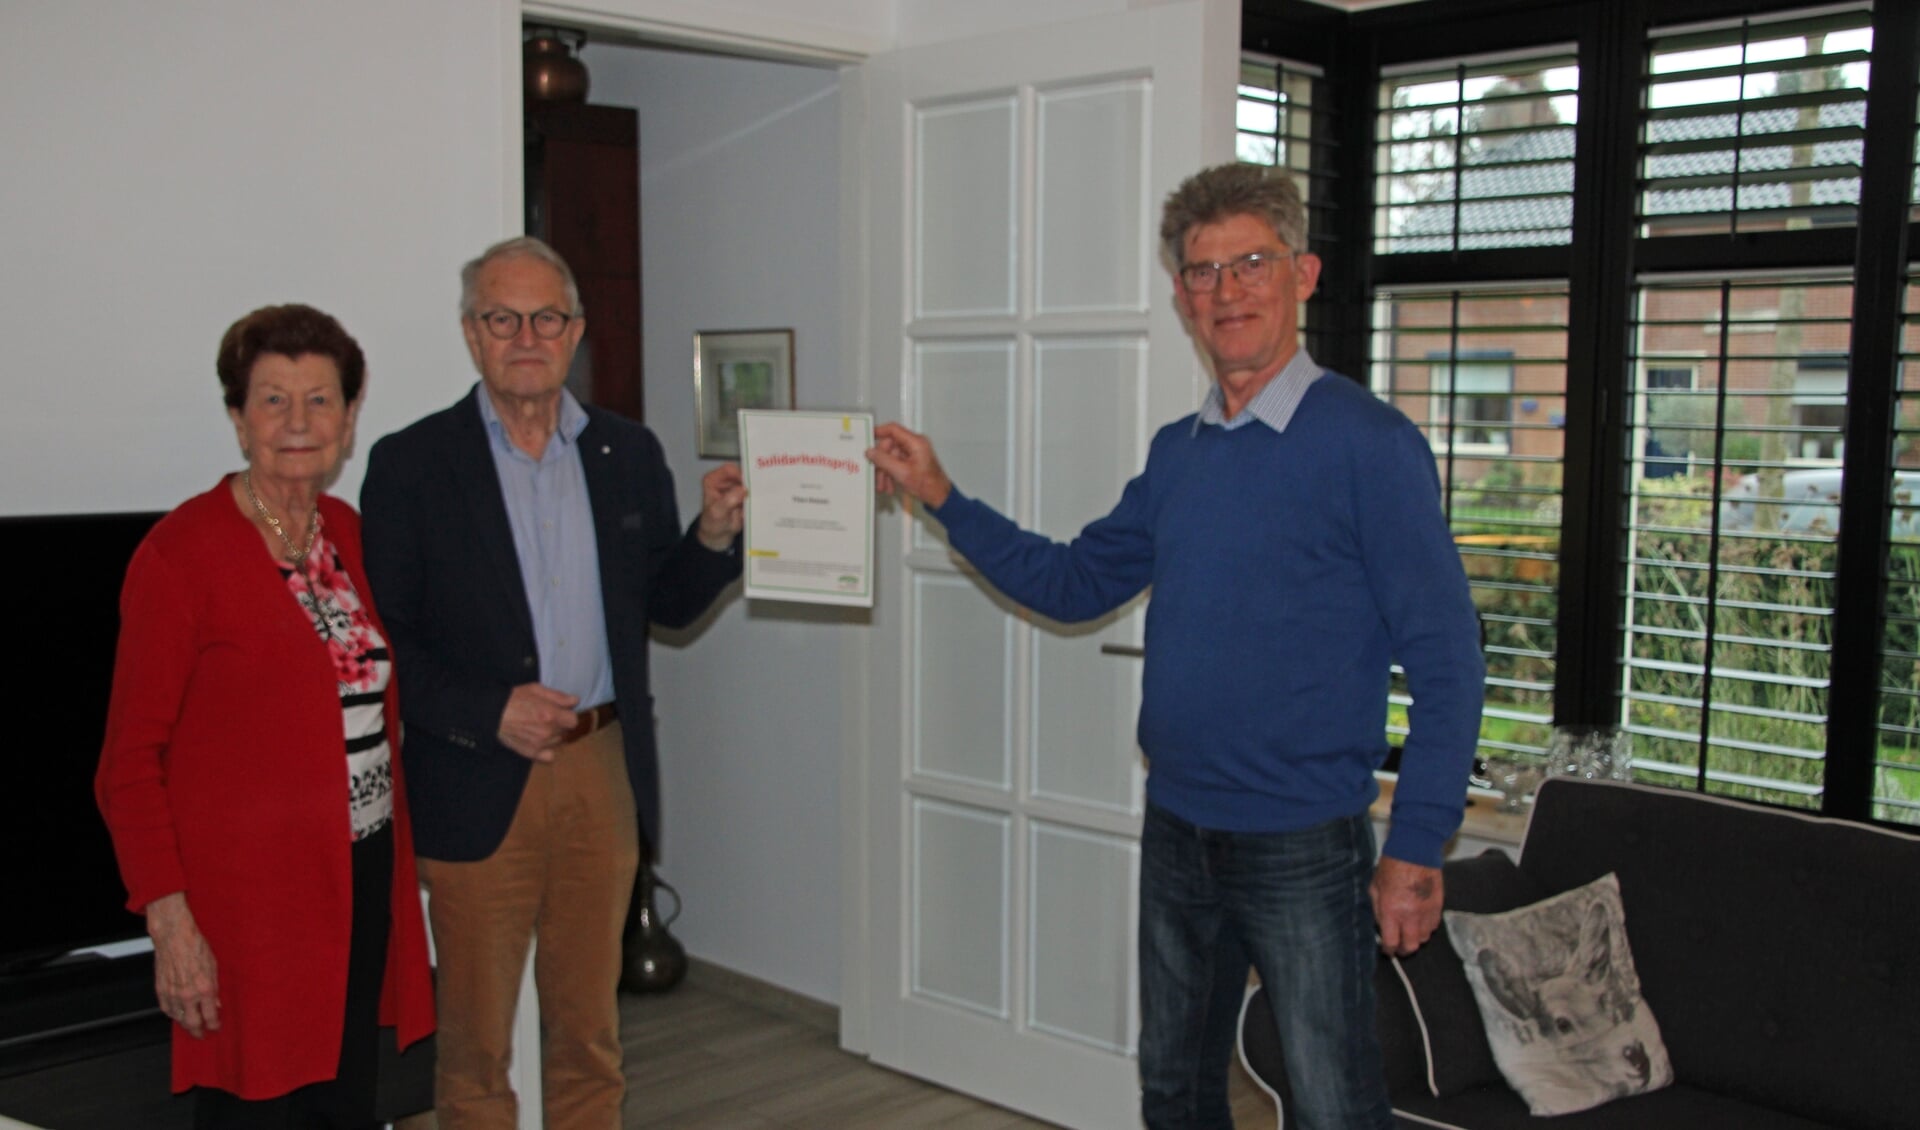 PP-voorzitter Gerrit Stronks (rechts) overhandigt Theo Heesen de oorkonde. Links Joke Heesen. Foto: Lydia ter Welle